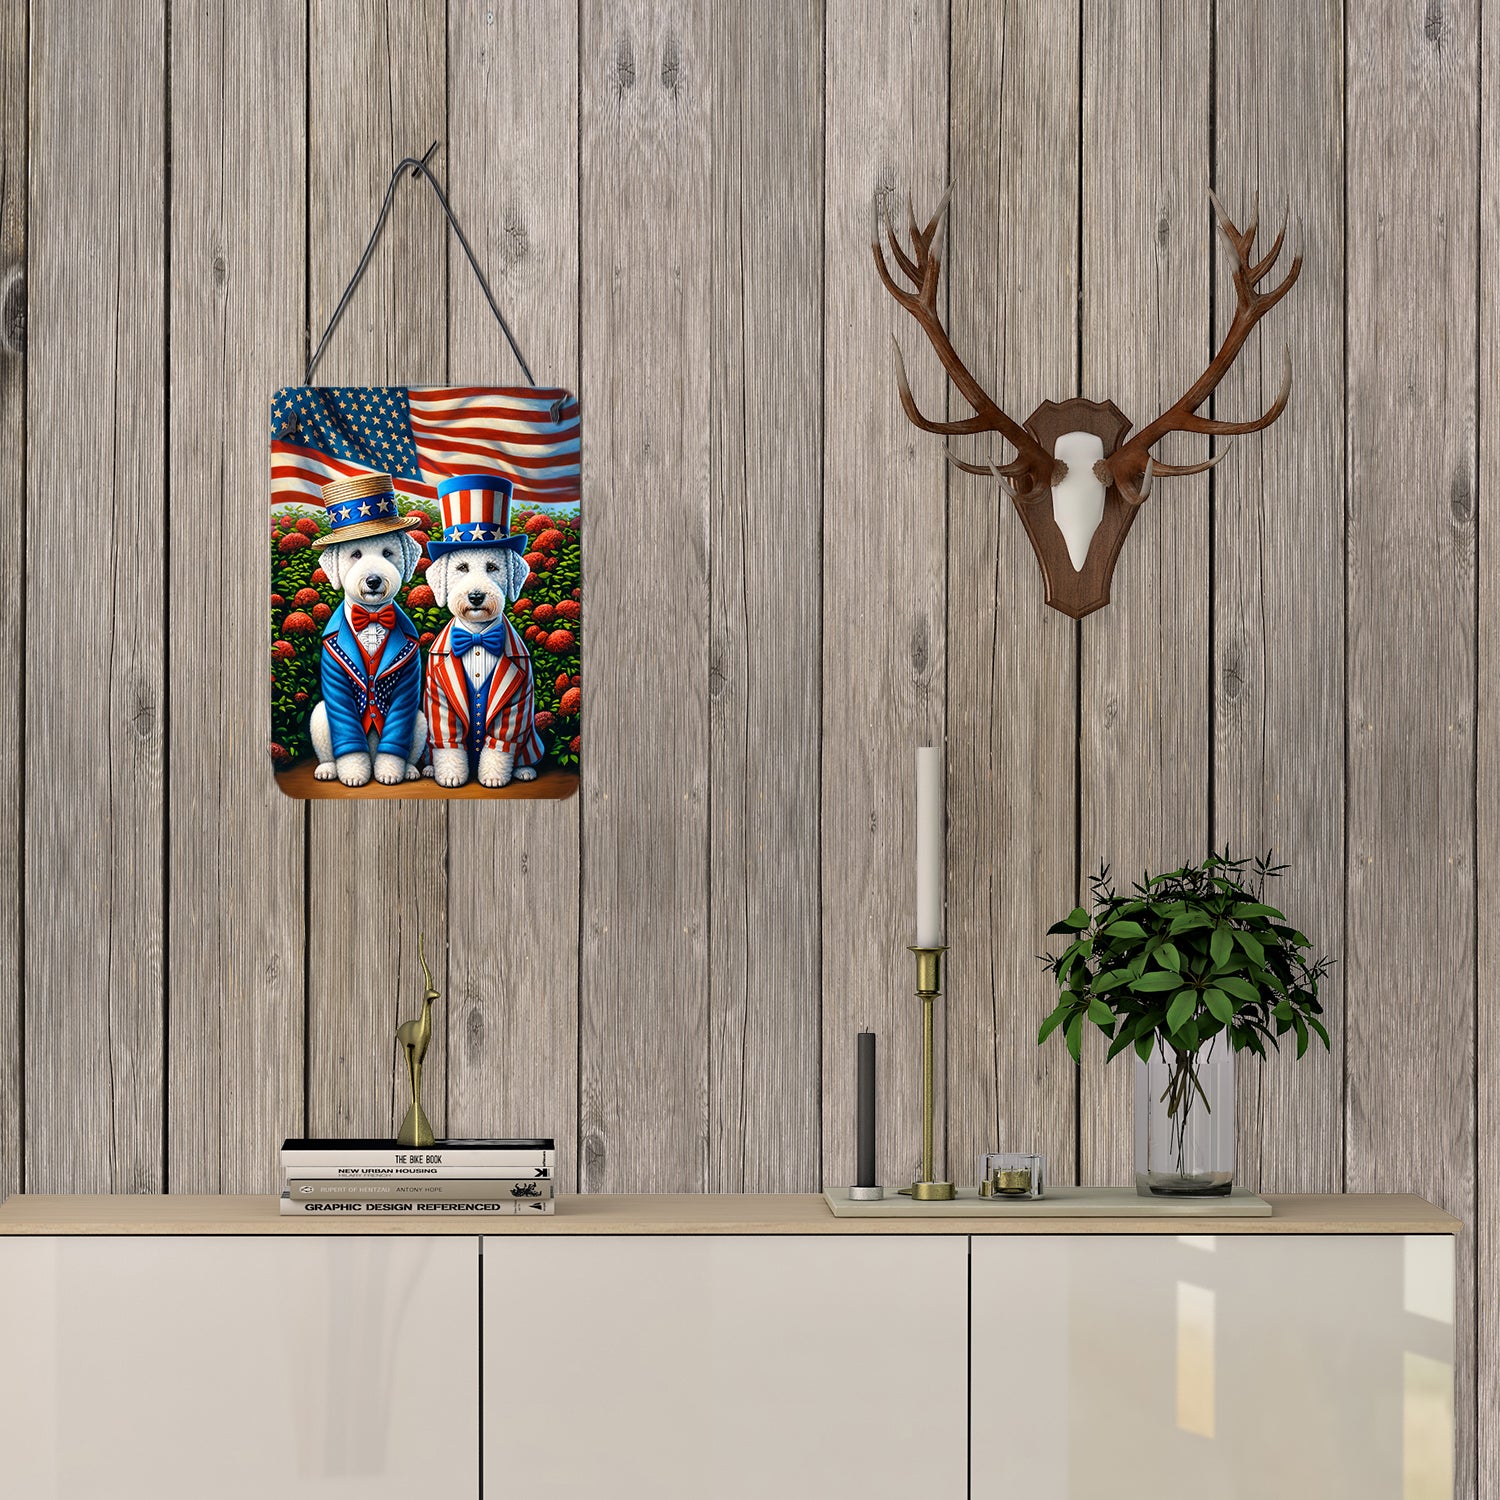 All American Bedlington Terrier Wall or Door Hanging Prints